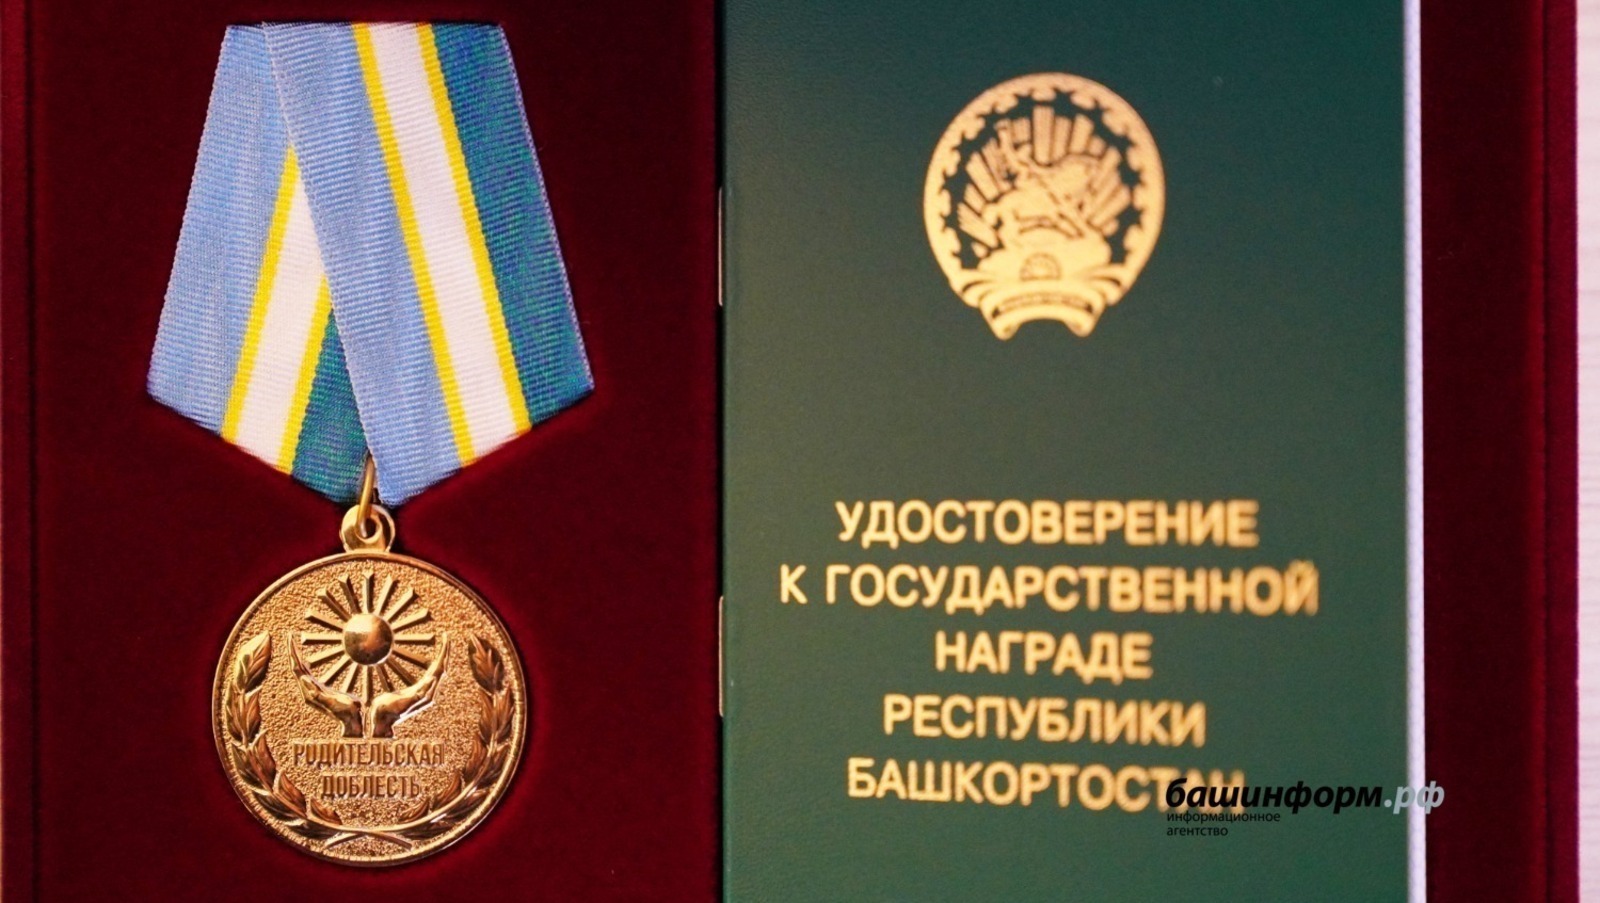 Медалью "Родительская доблесть" в Башкирии будут награждаться патронатные воспитатели